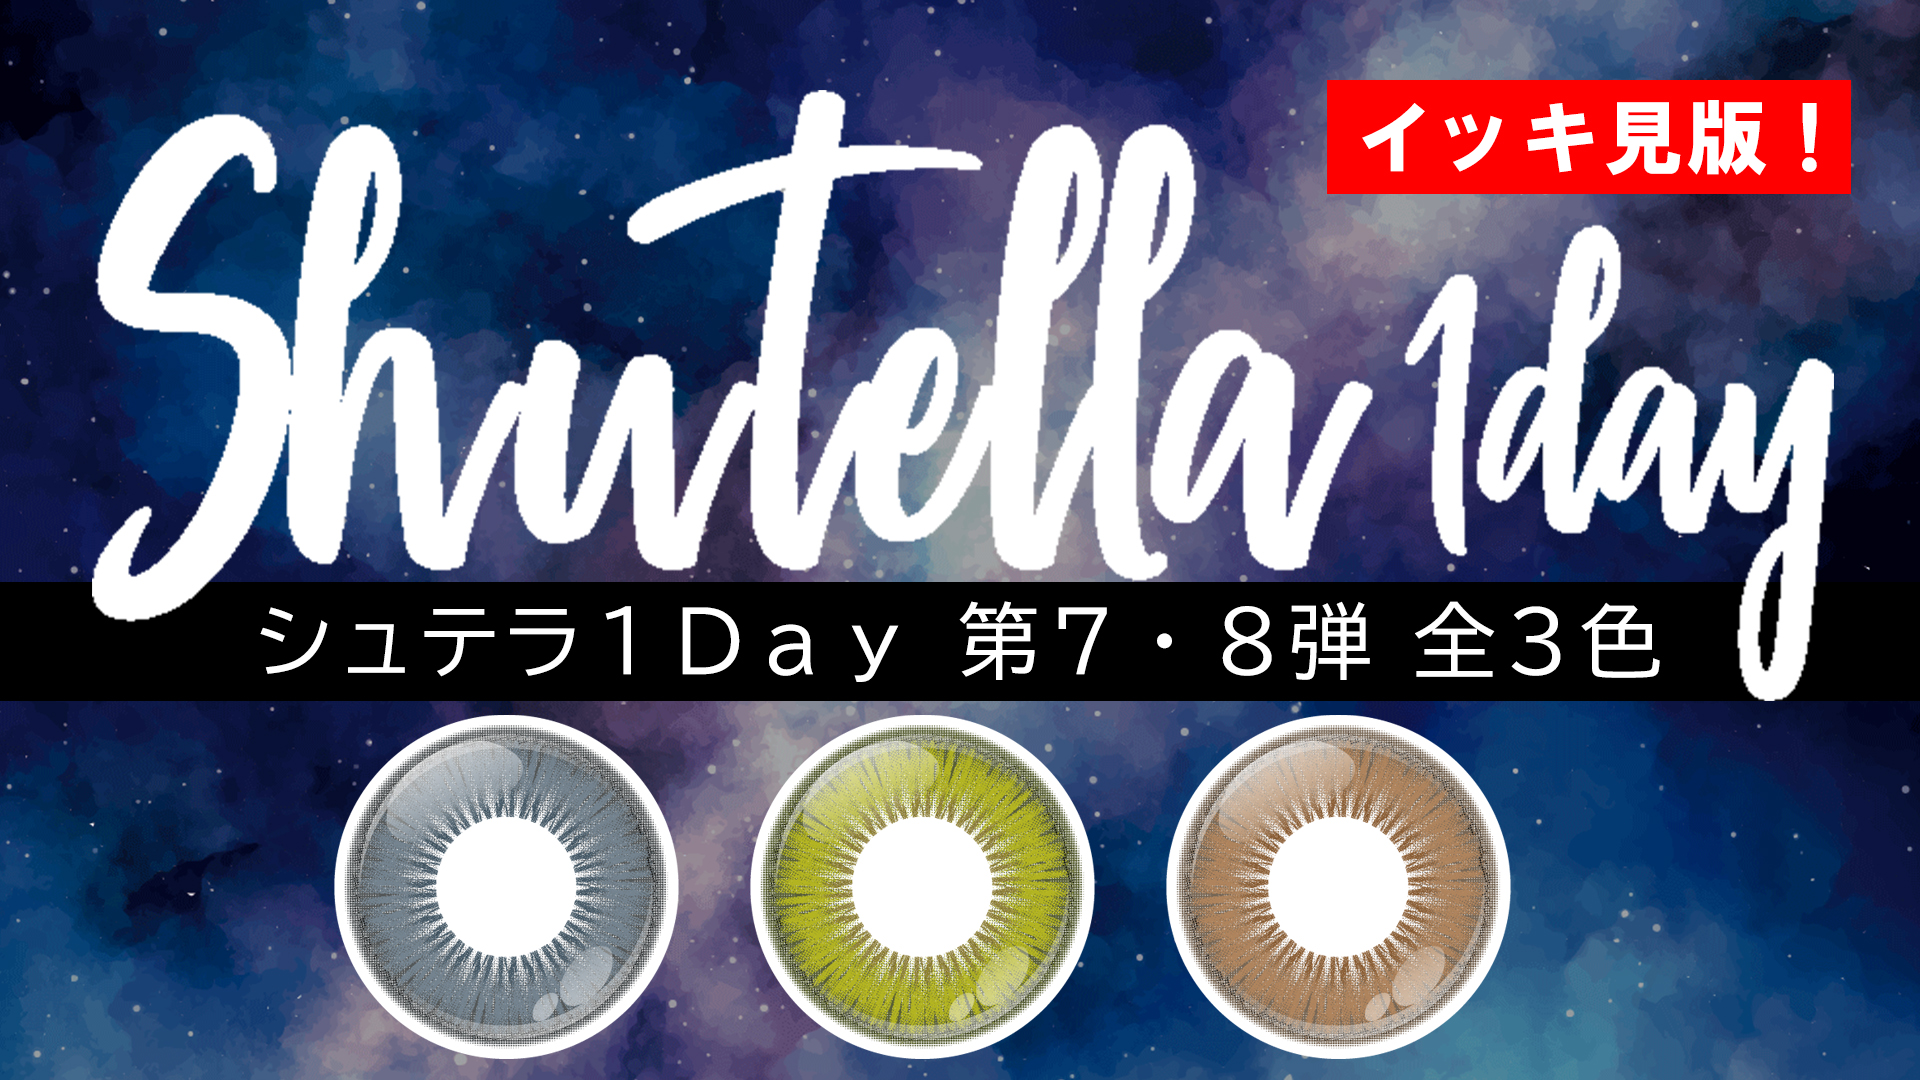 【新色】Shutella(シュテラ) 1Day第7&8弾 全3色 一気見!